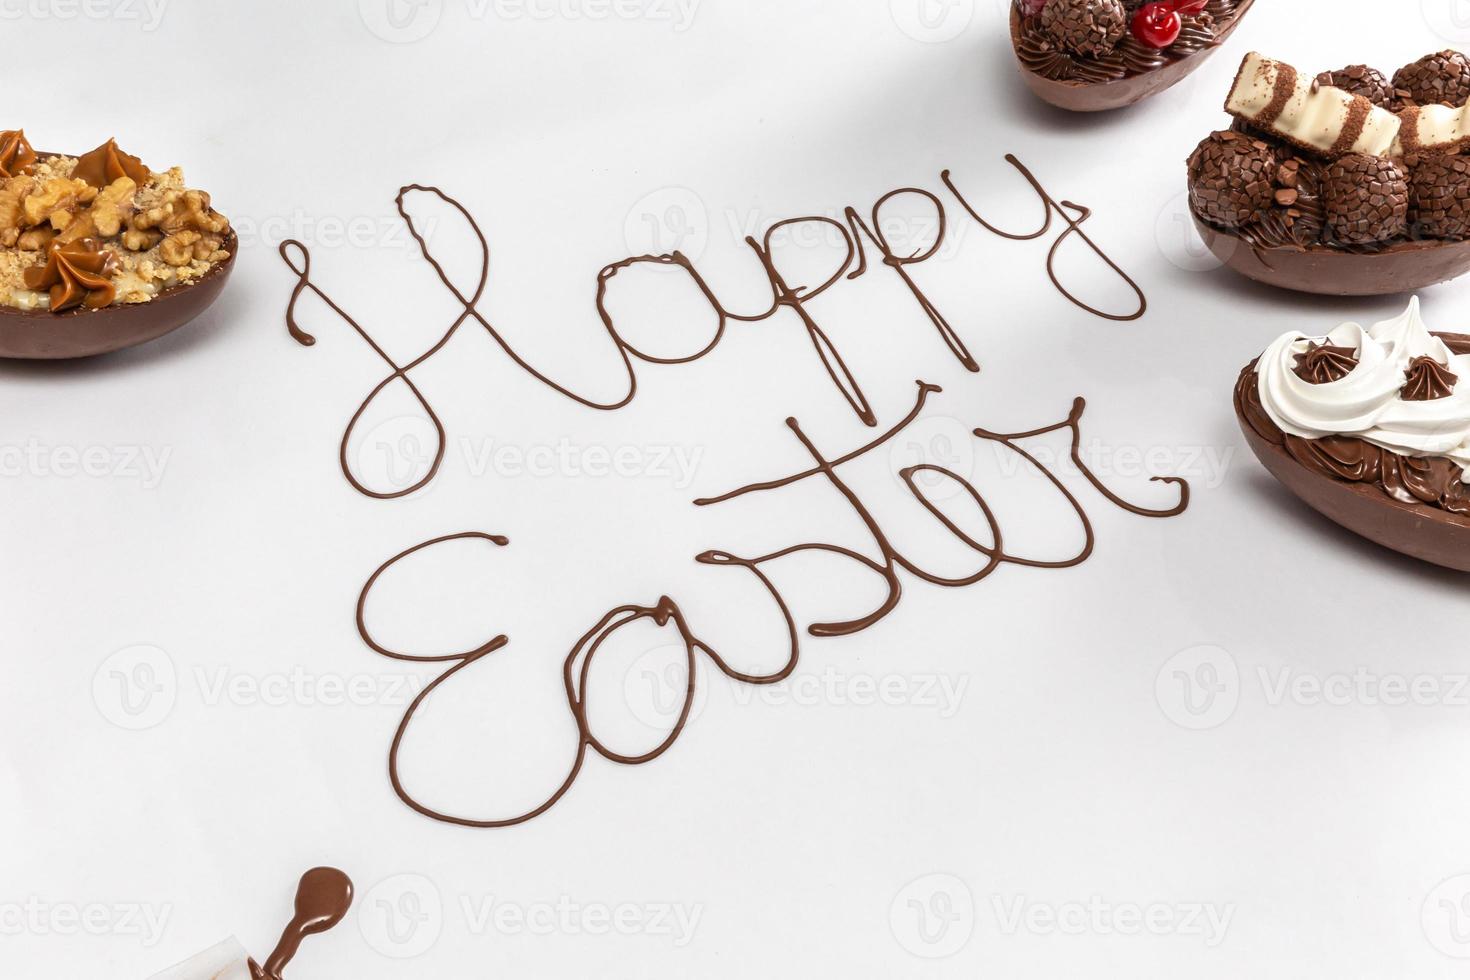 vrolijk pasen geschreven met gesmolten chocolade op witte achtergrond. met gastronomische paaseieren aan de zijkanten. foto